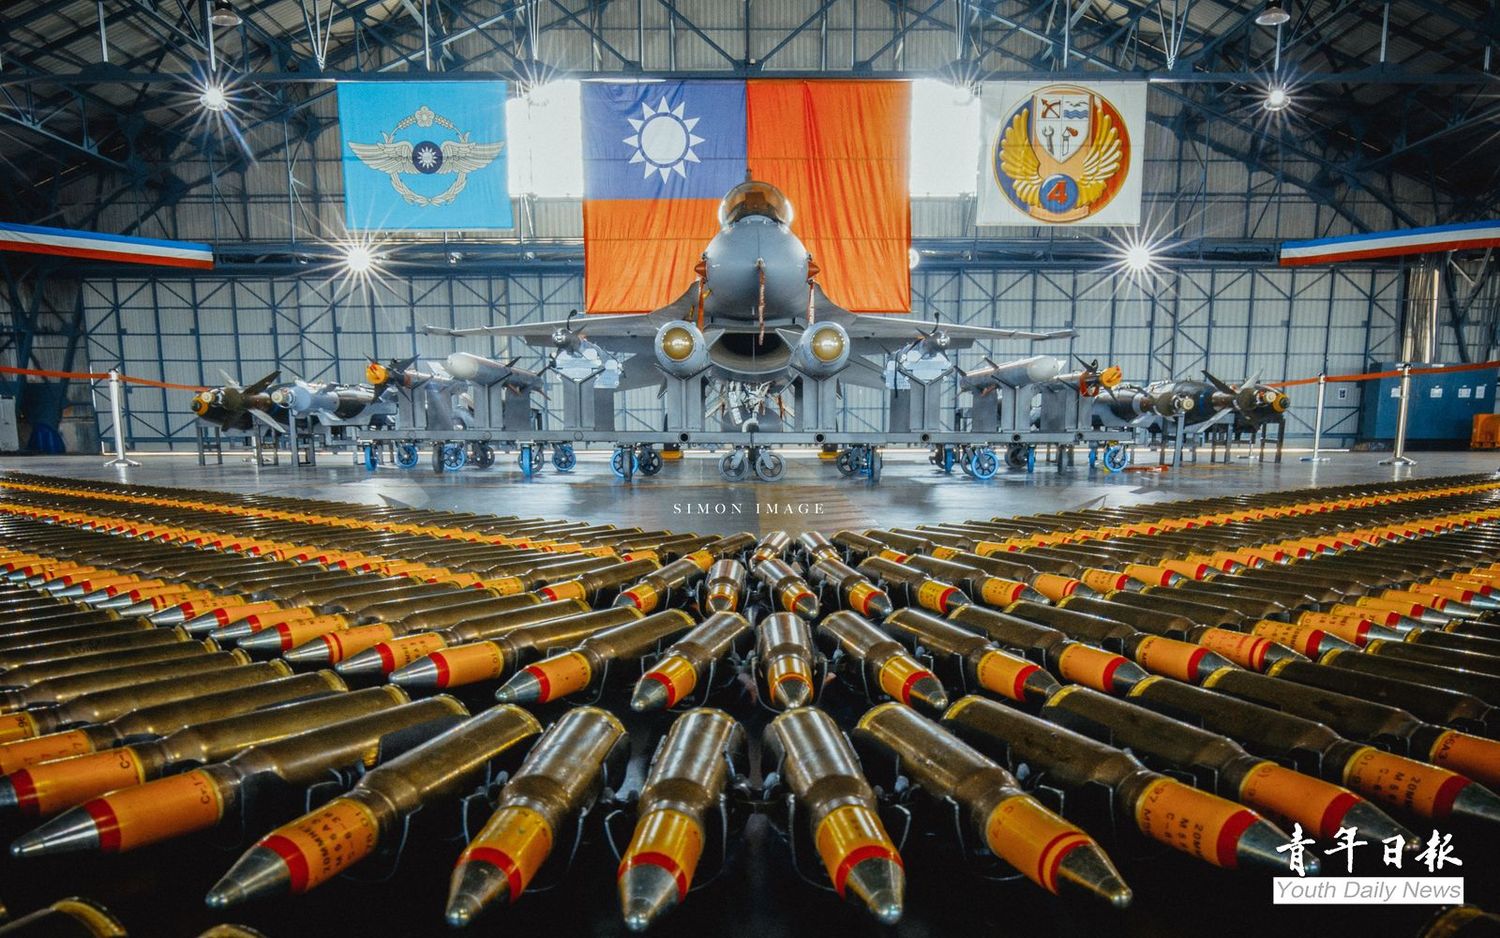 李德威上尉獲獎作品「ROC Air Force」則是記錄今年度國軍春節加強戰備媒體邀訪時，空軍第4聯隊在棚廠陳列F-16V配賦的各型武器裝備照片。   圖：取自青年日報